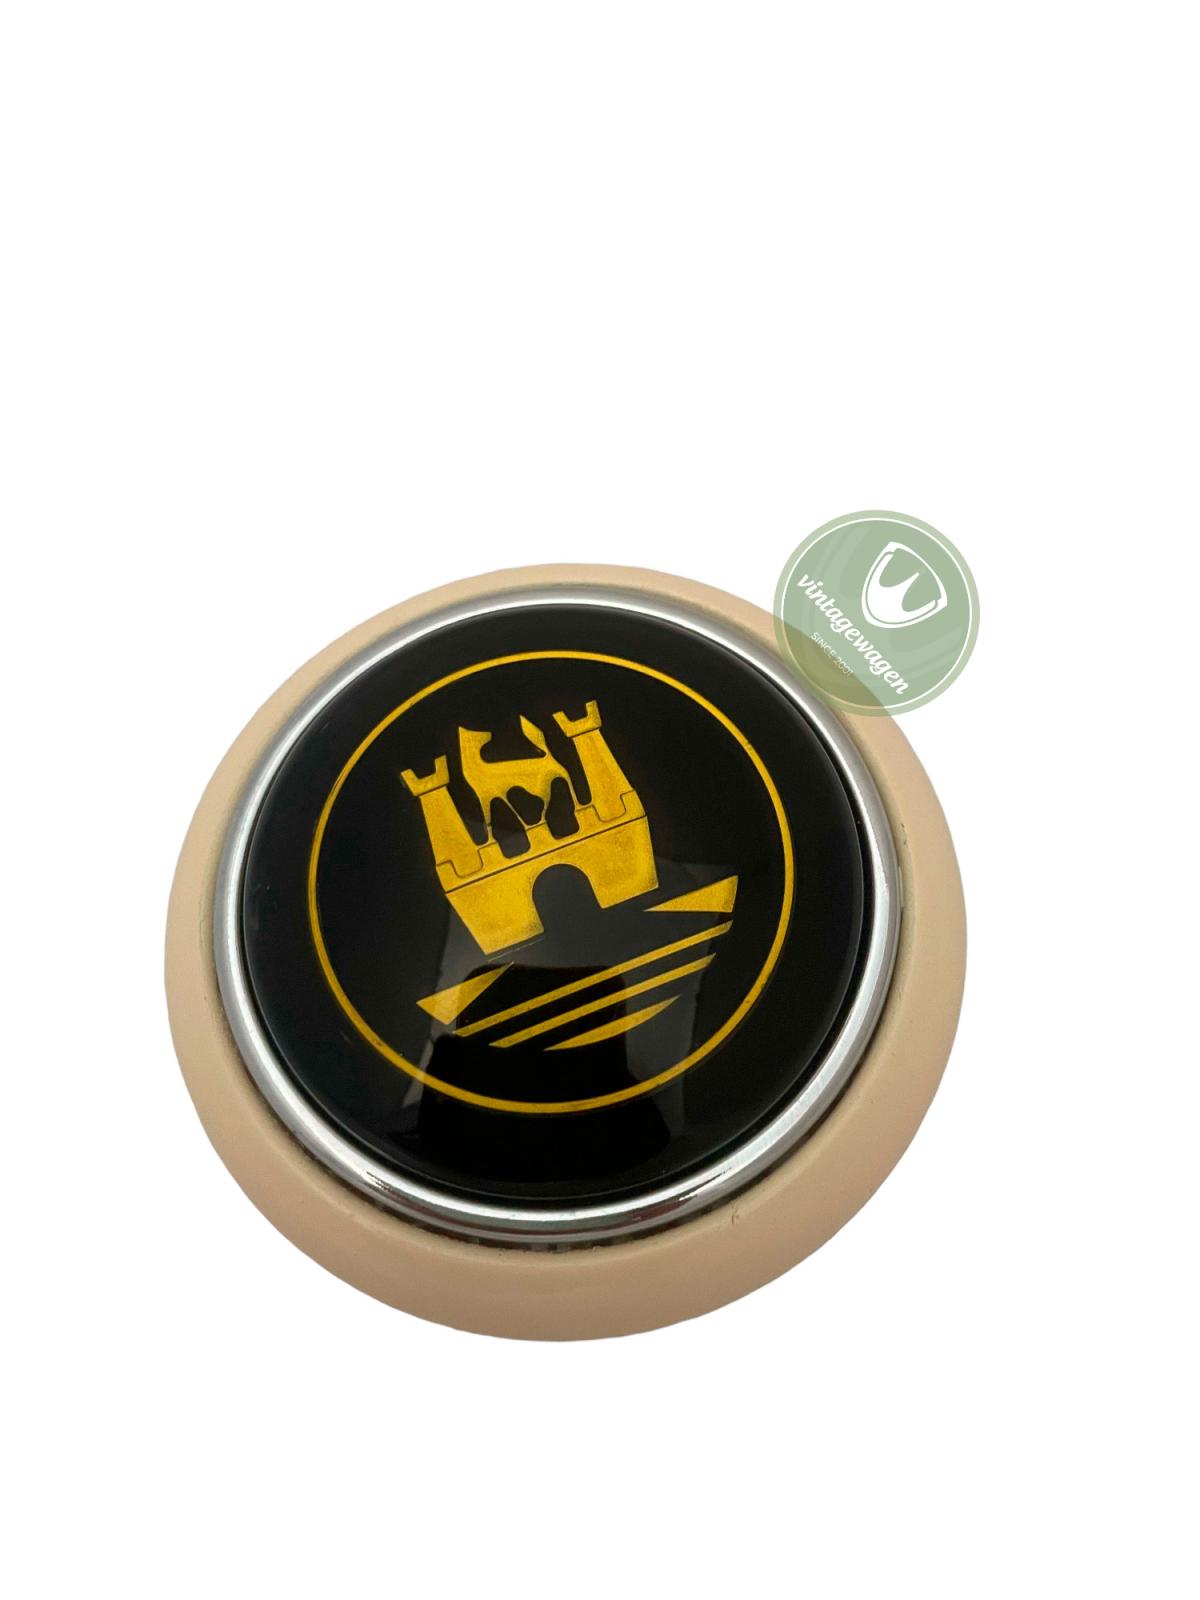 Botão Buzina Kombi, 1955-75, Marfim + Emblema Dourado 211415669ig | Kombi 1955-75 SKU: 211415669IG